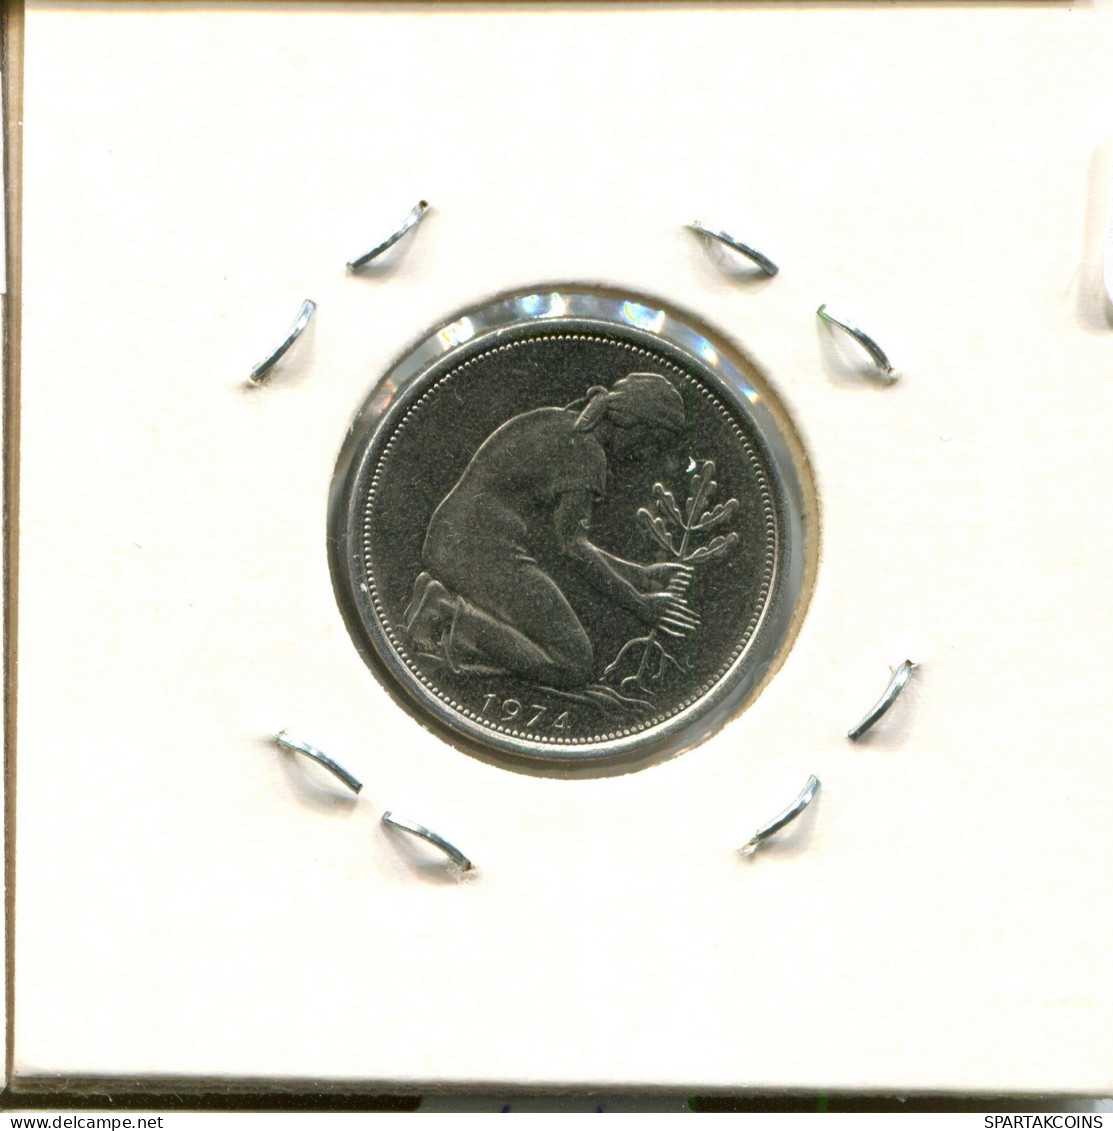 50 PFENNIG 1974 J WEST & UNIFIED GERMANY Coin #DB574.U.A - 50 Pfennig